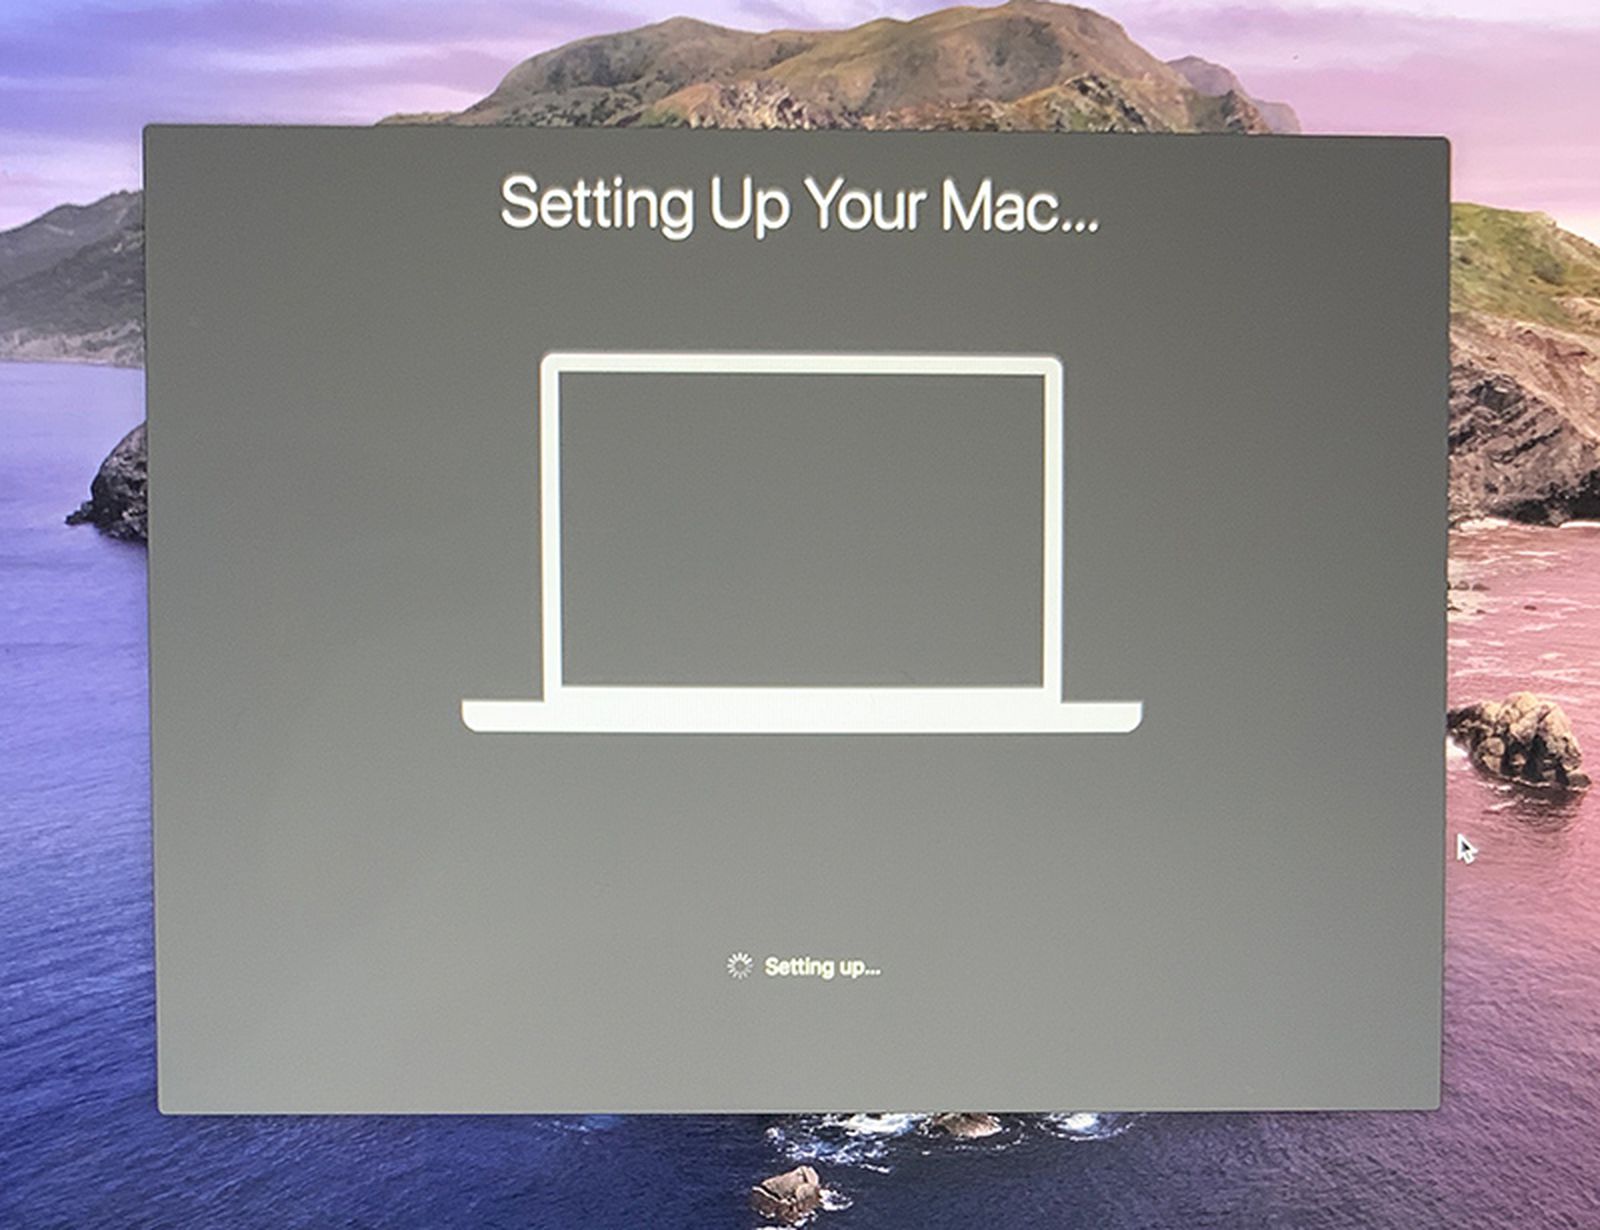 Update mac app stuck on paused